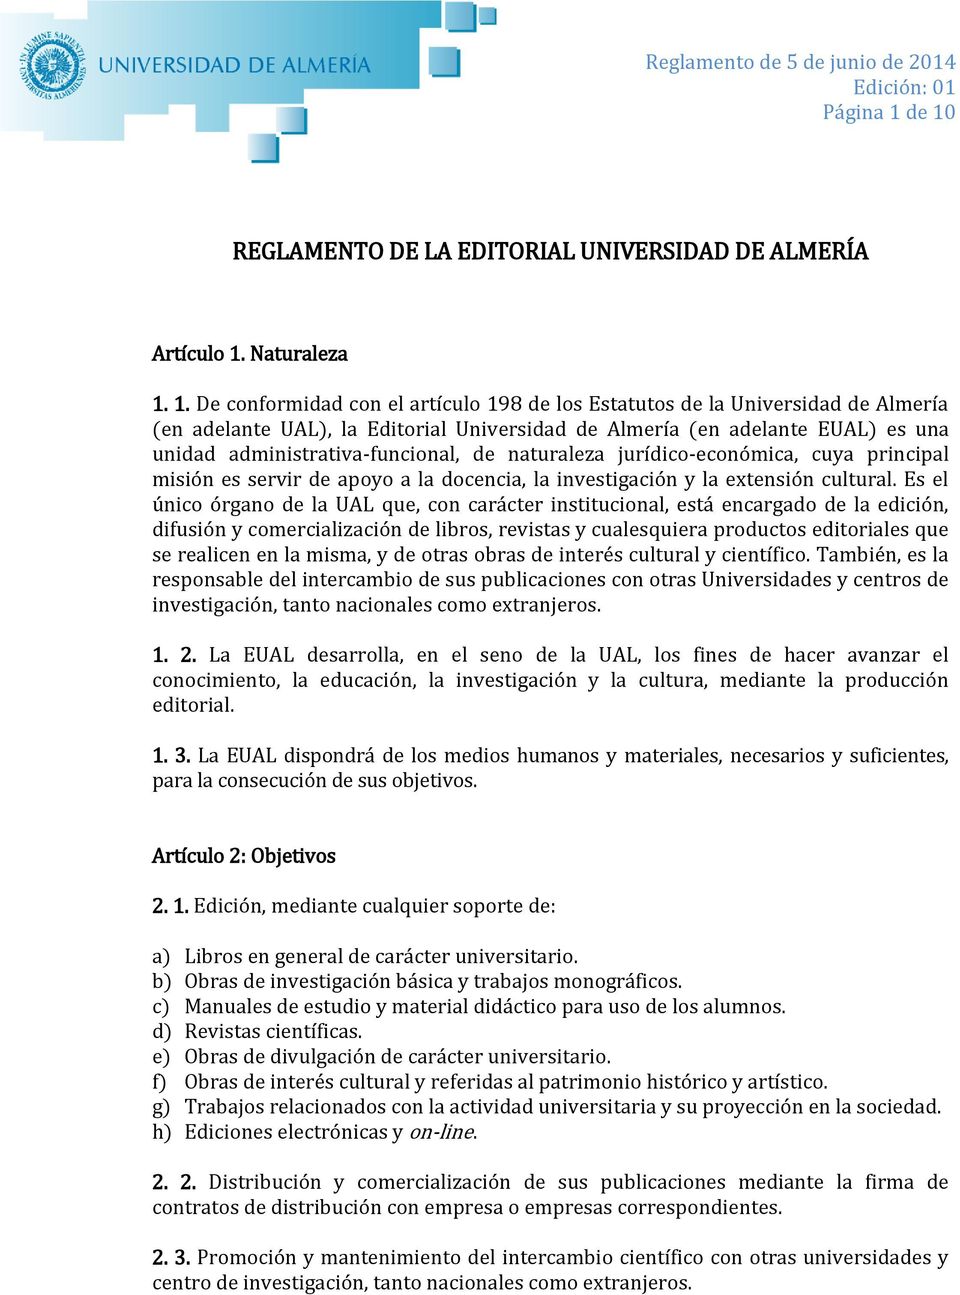 Universidad de Almería (en adelante EUAL) es una unidad administrativa-funcional, de naturaleza jurídico-económica, cuya principal misión es servir de apoyo a la docencia, la investigación y la